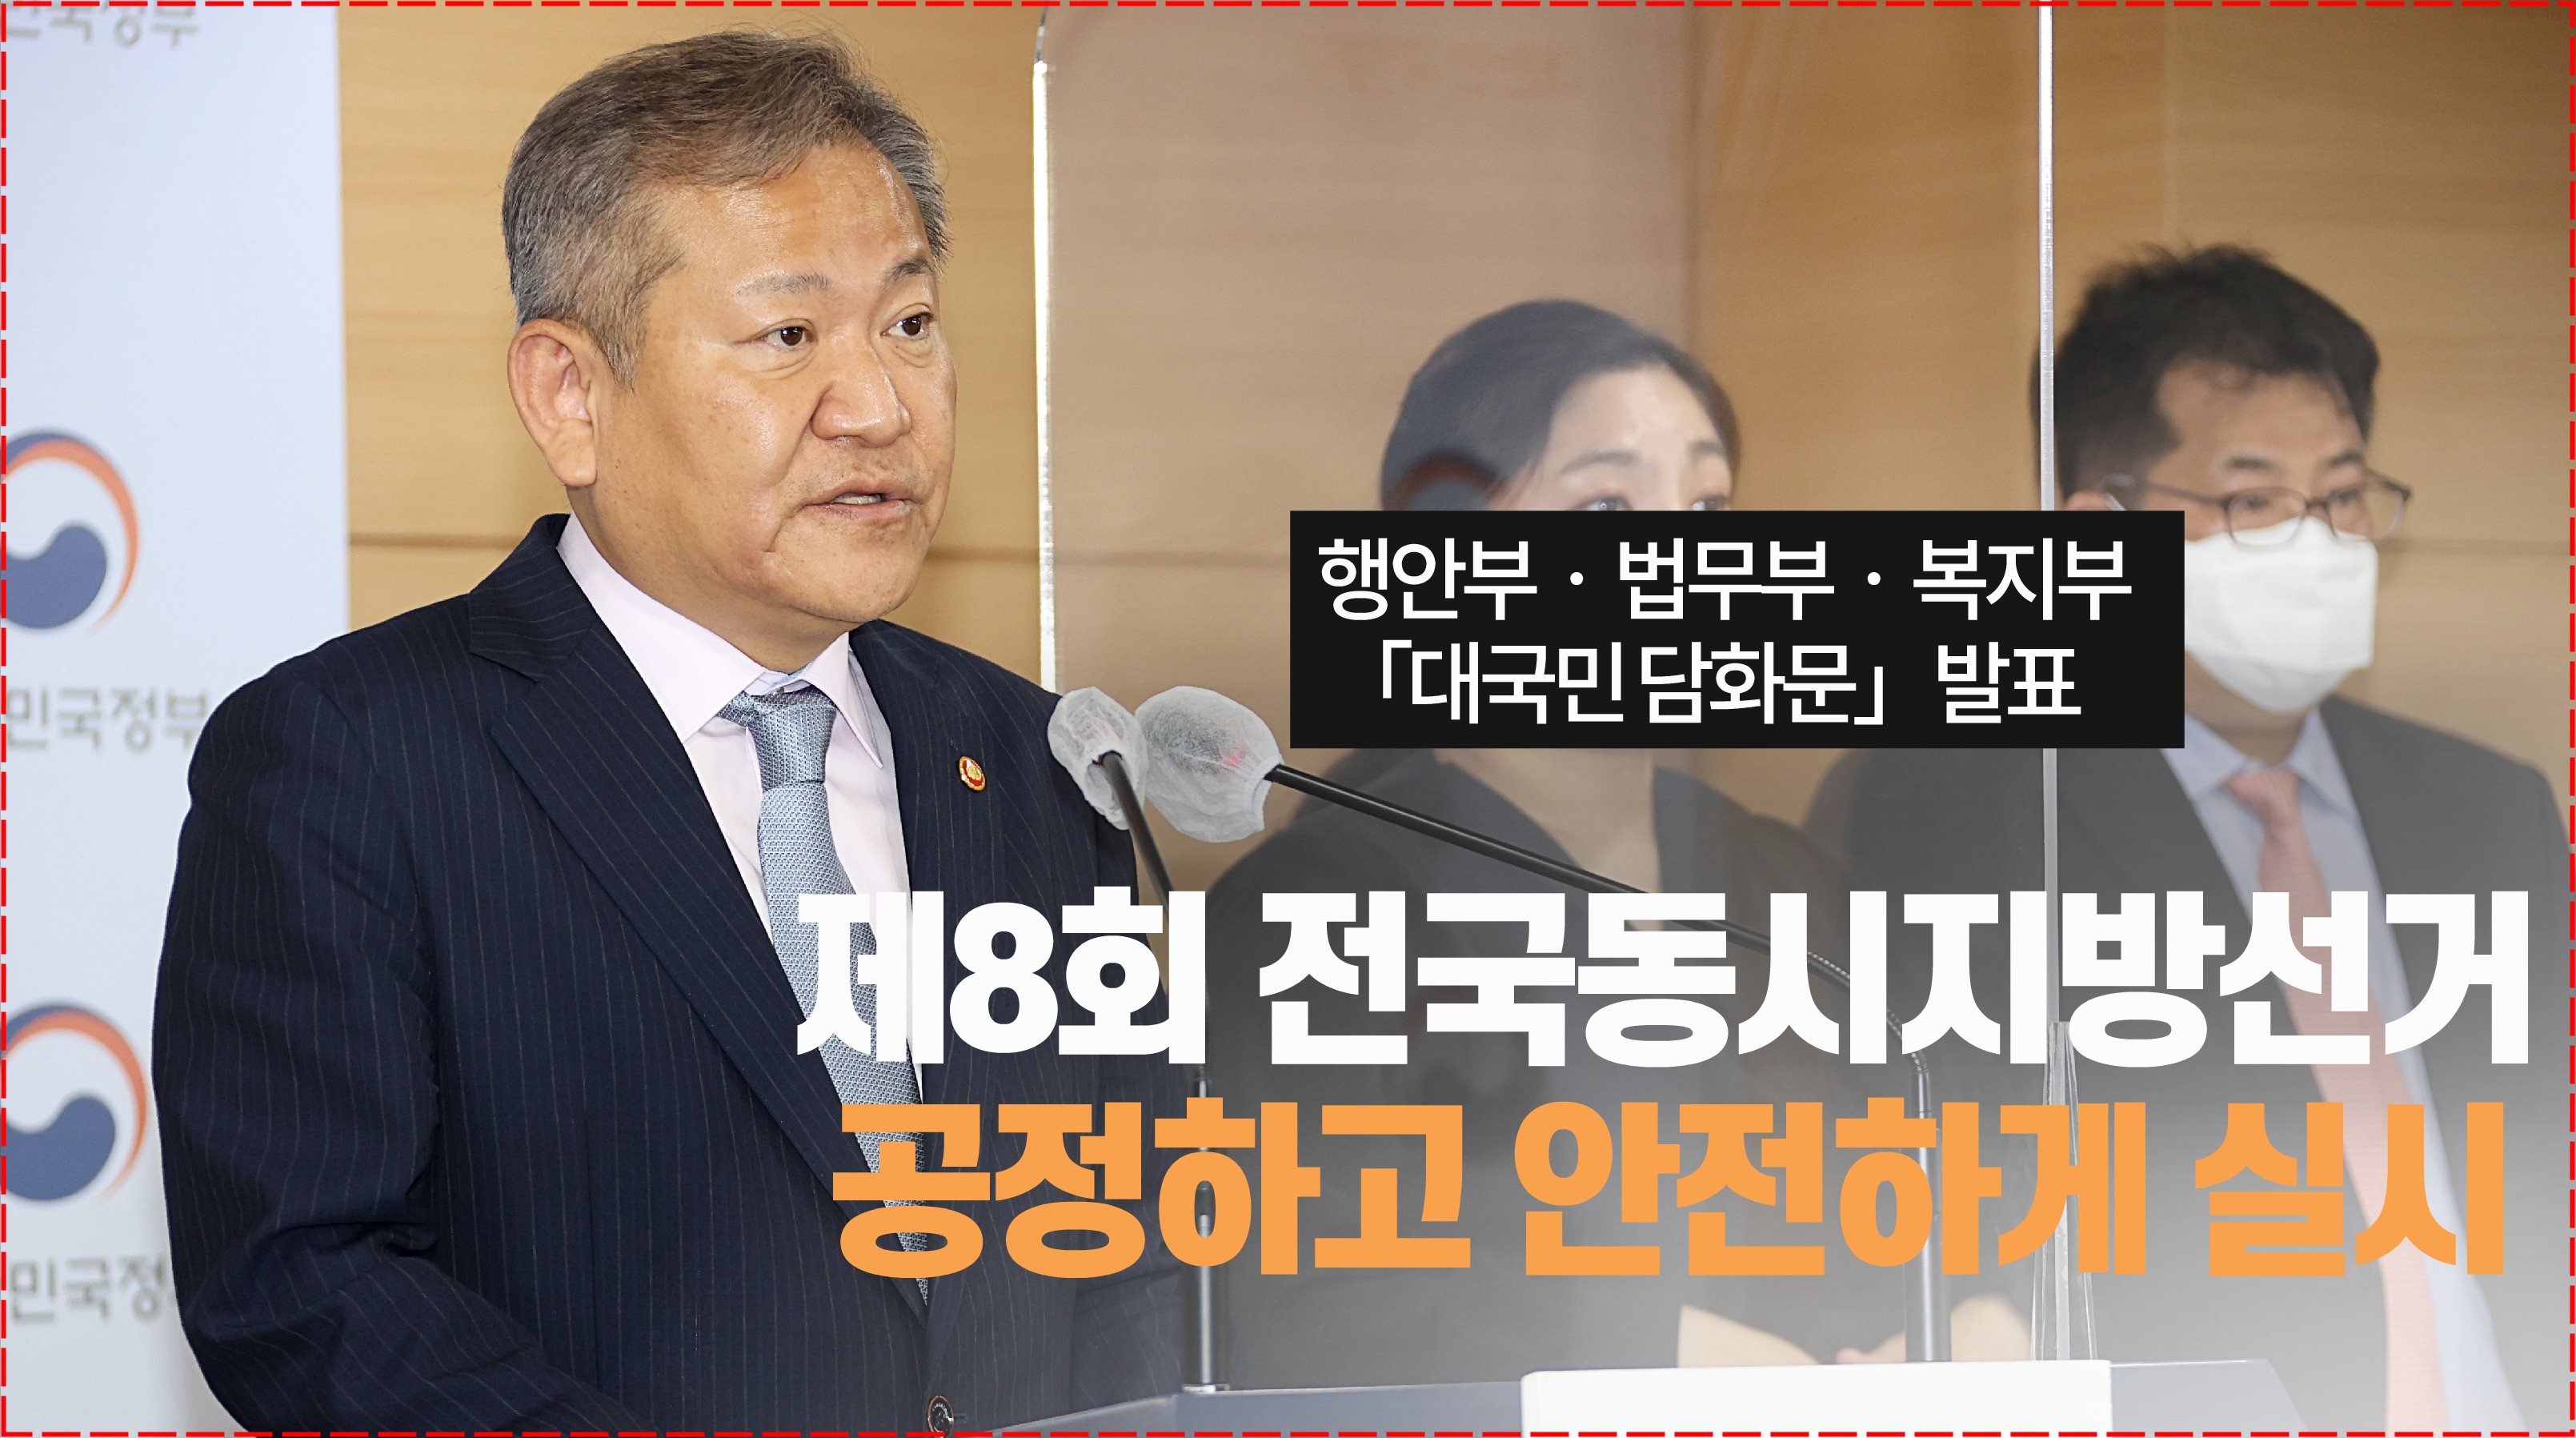 이상민 장관, 제8회 전국동시지방선거 대국민 담화문 발표